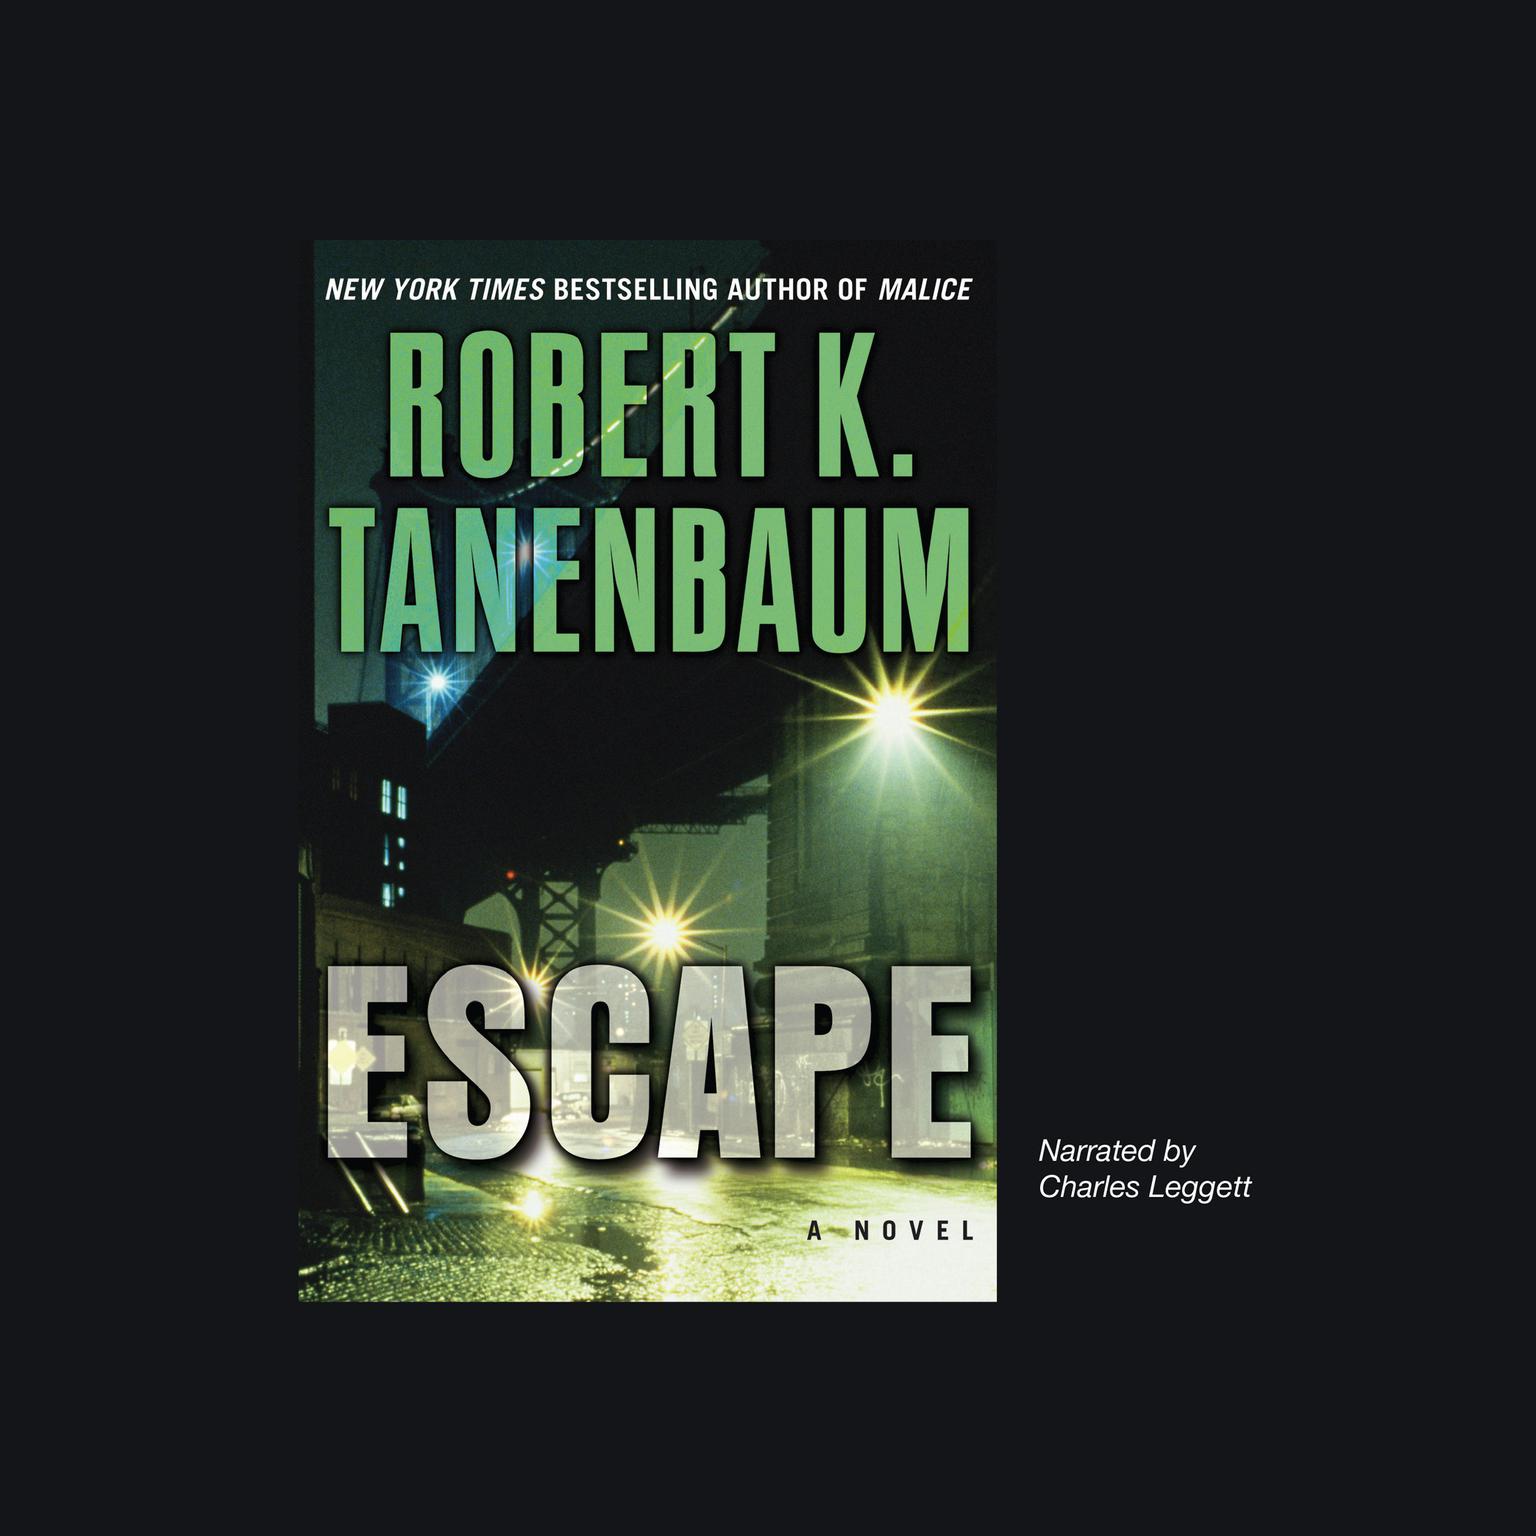 Escape Audiobook, by Robert K. Tanenbaum